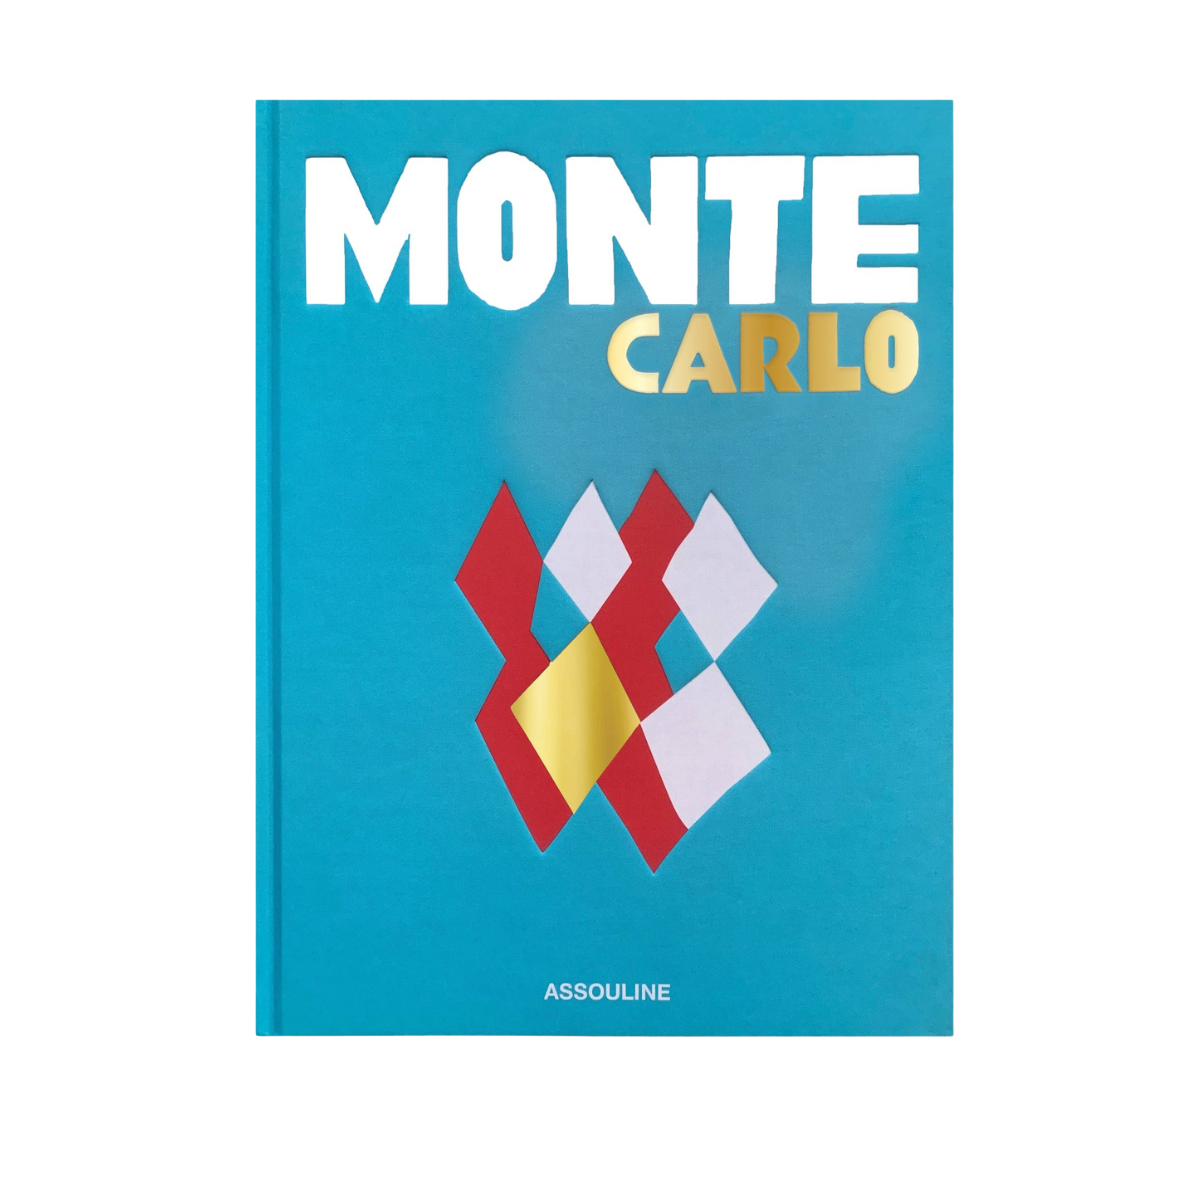 "Monte Carlo”